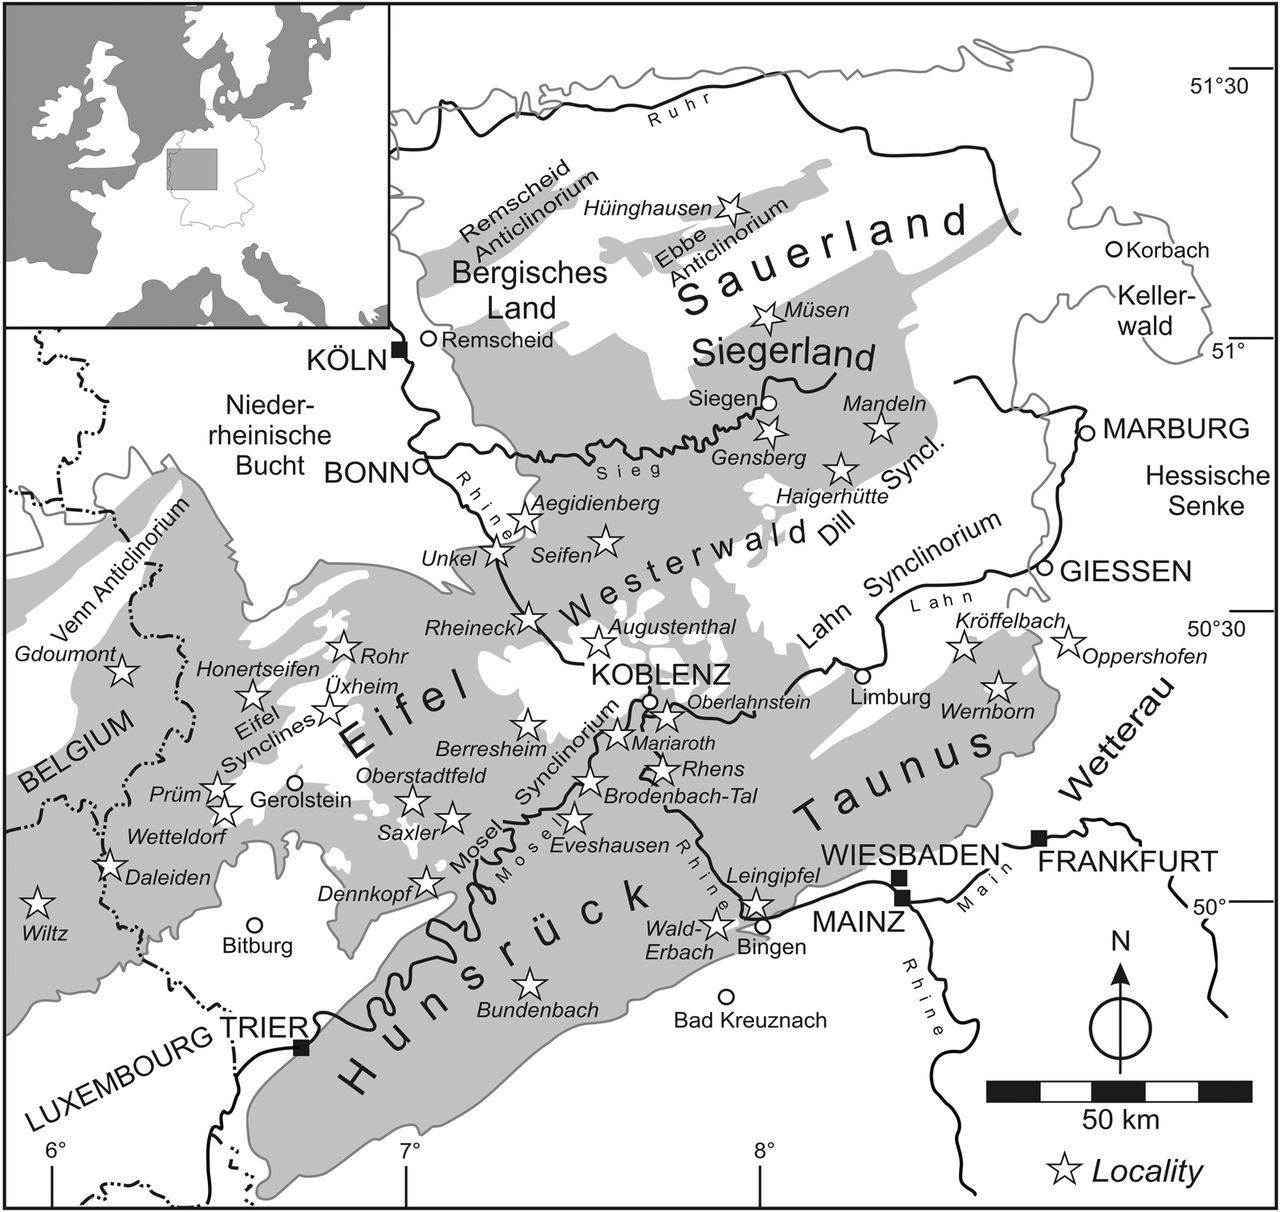 Bundenbach overview_Map_Jansen (2016)